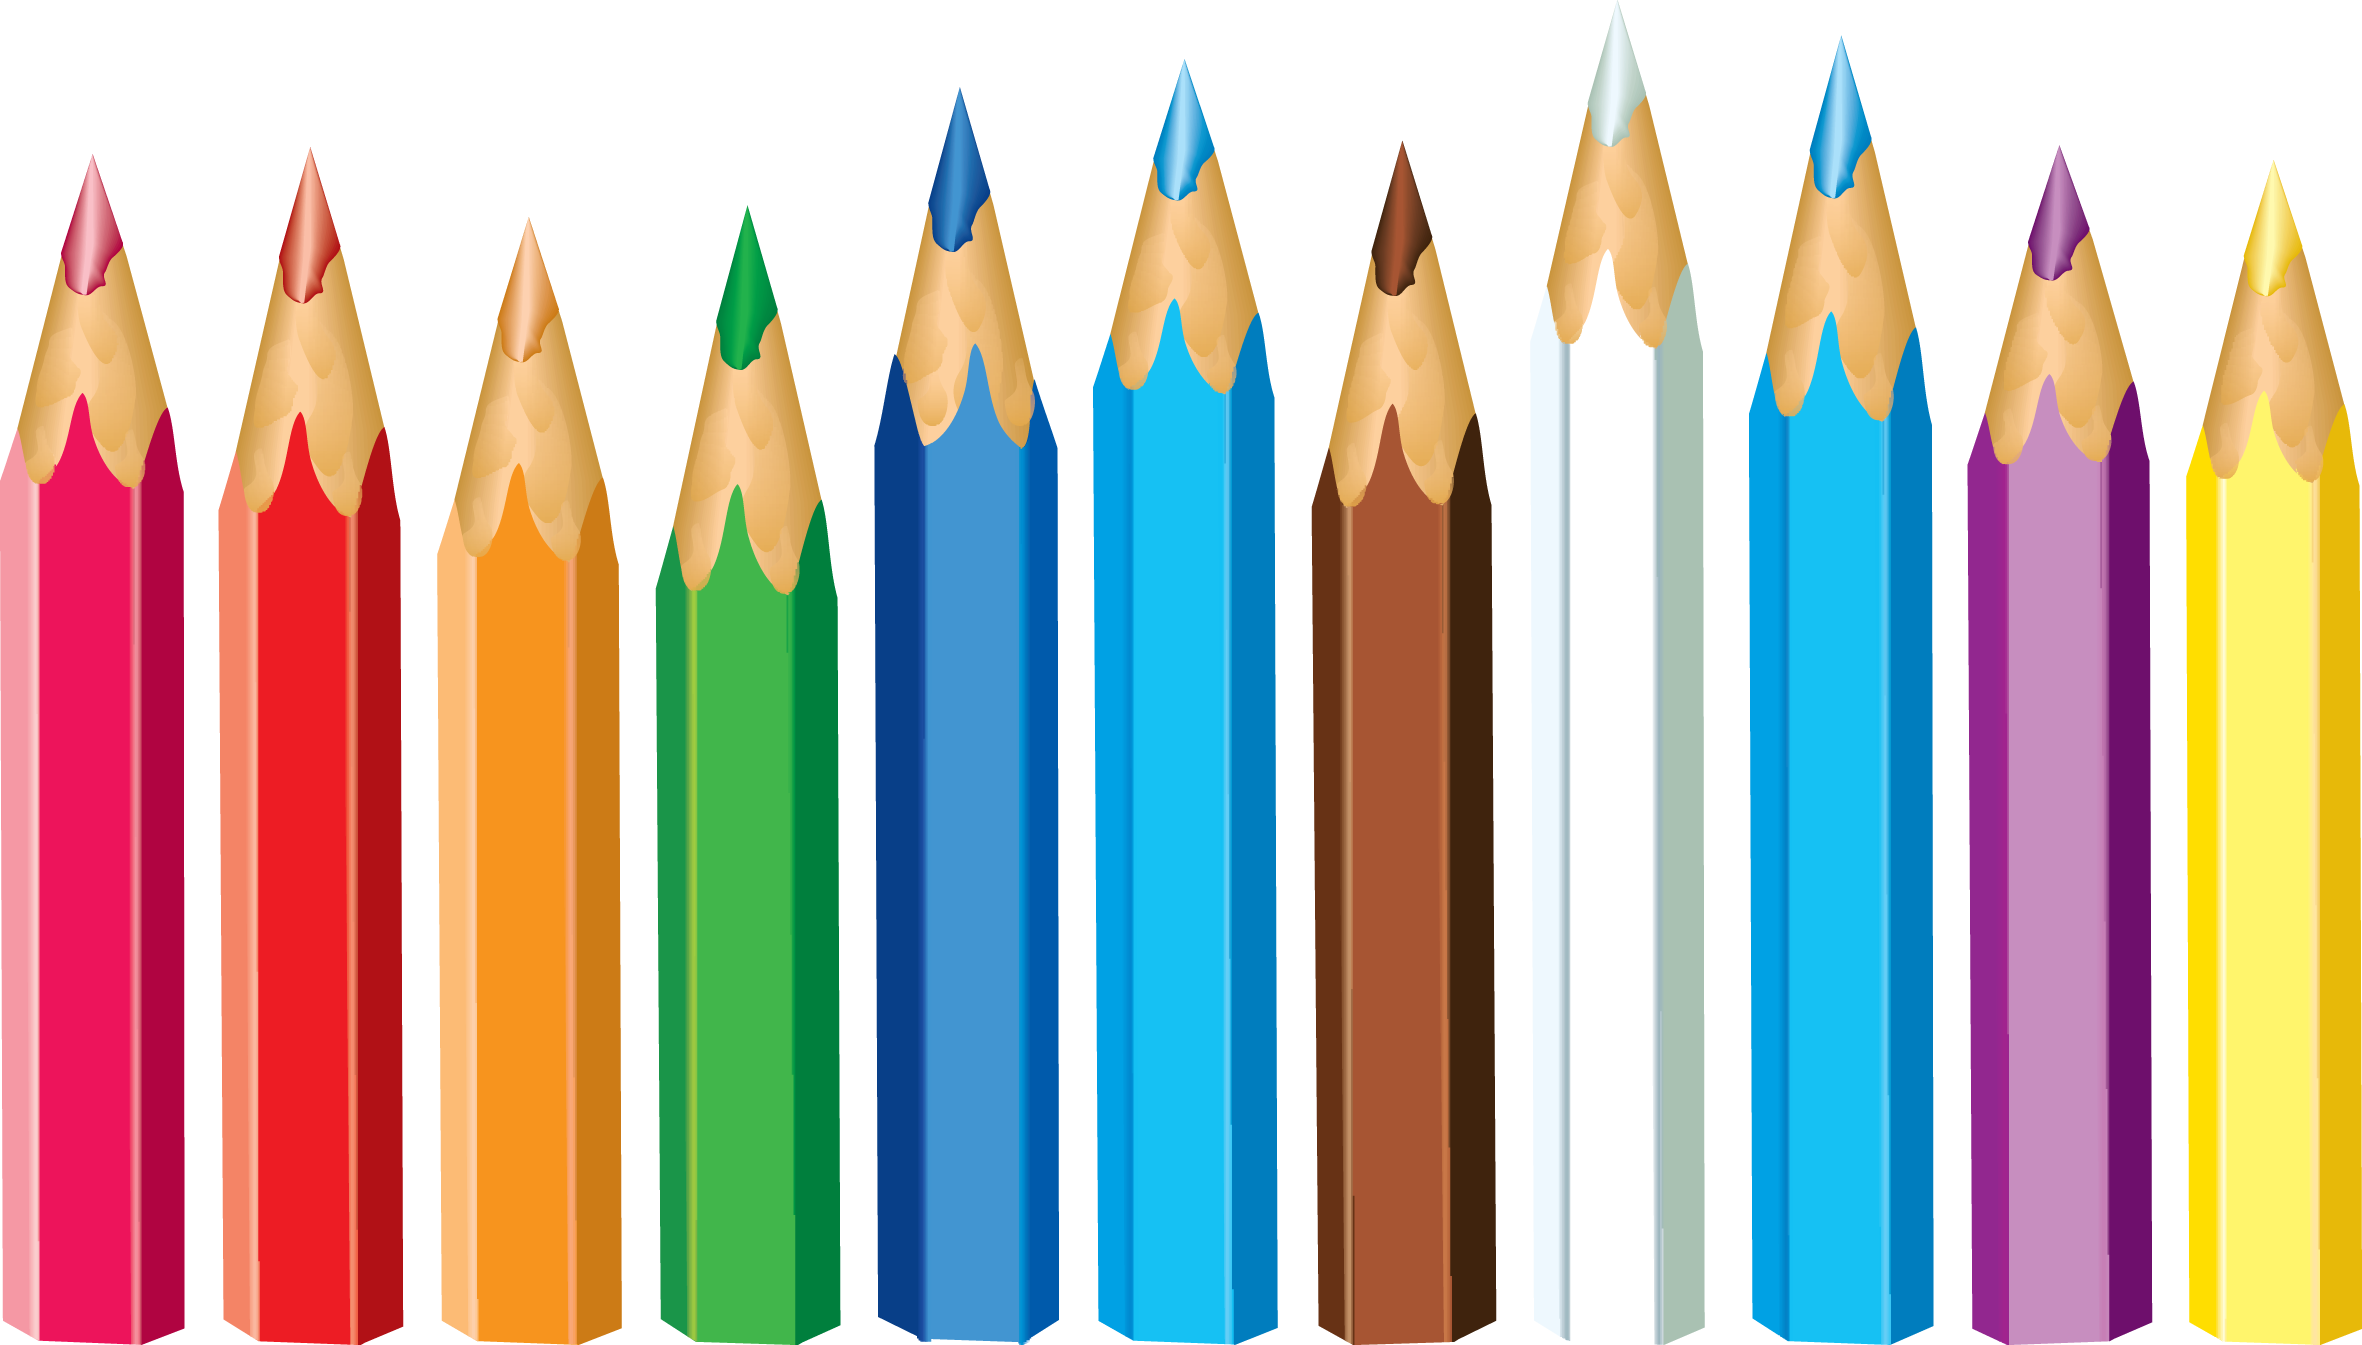 Изображения карандашей. Карандаши цветные. Цветные карандаши на белом фоне. Карандаш без фона. Карандаш на прозрачном фоне.